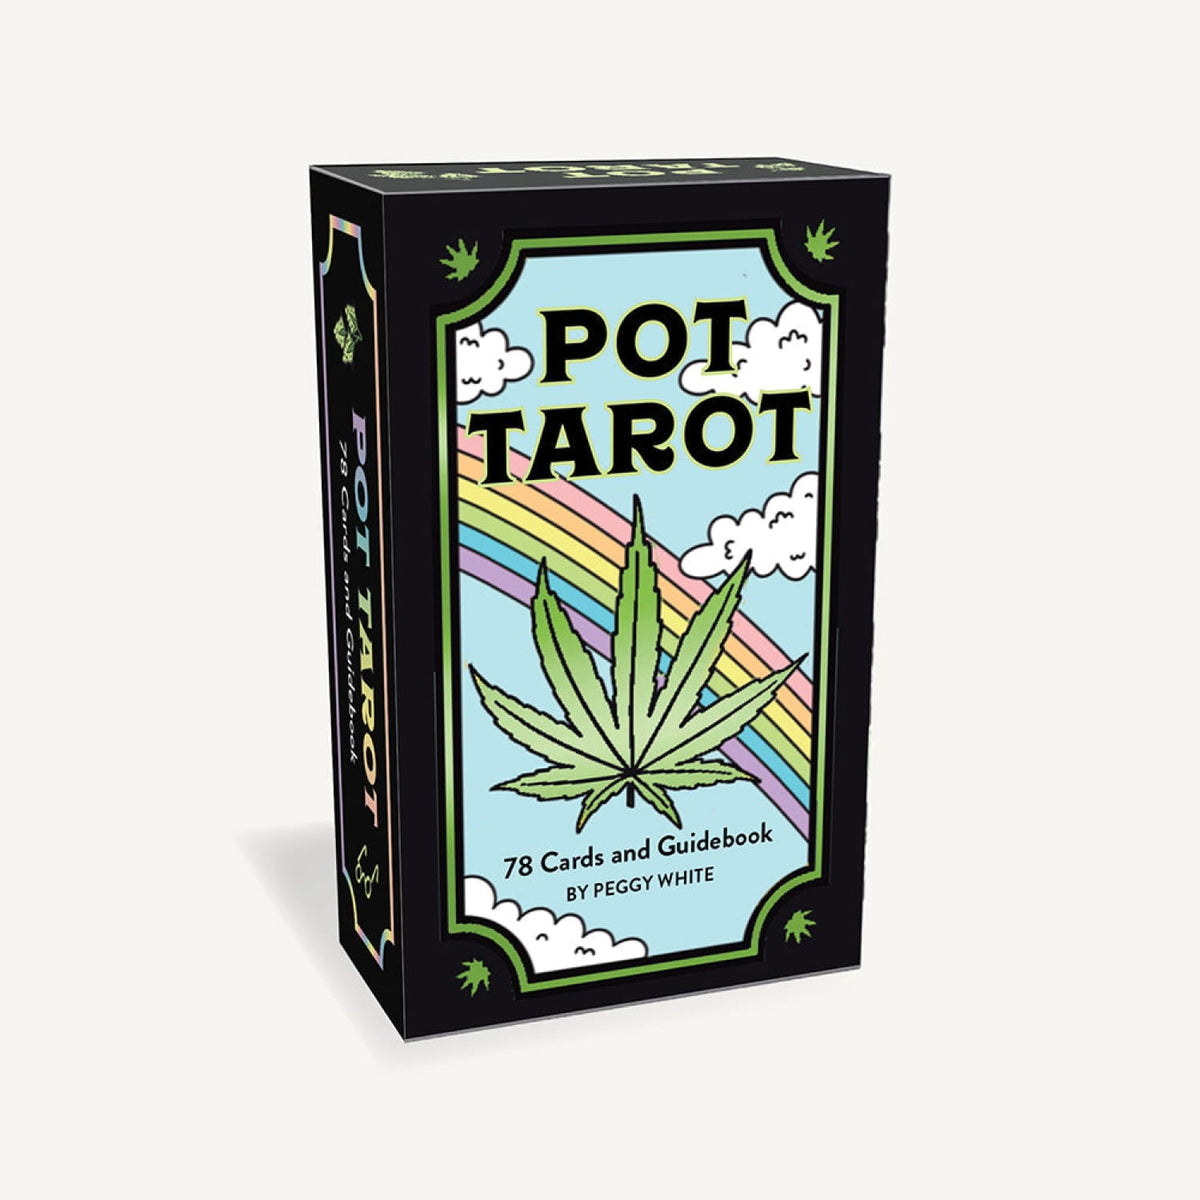 Pot Tarot Card Deck Sale - Stoner Gift - Cards - Tarot Deck